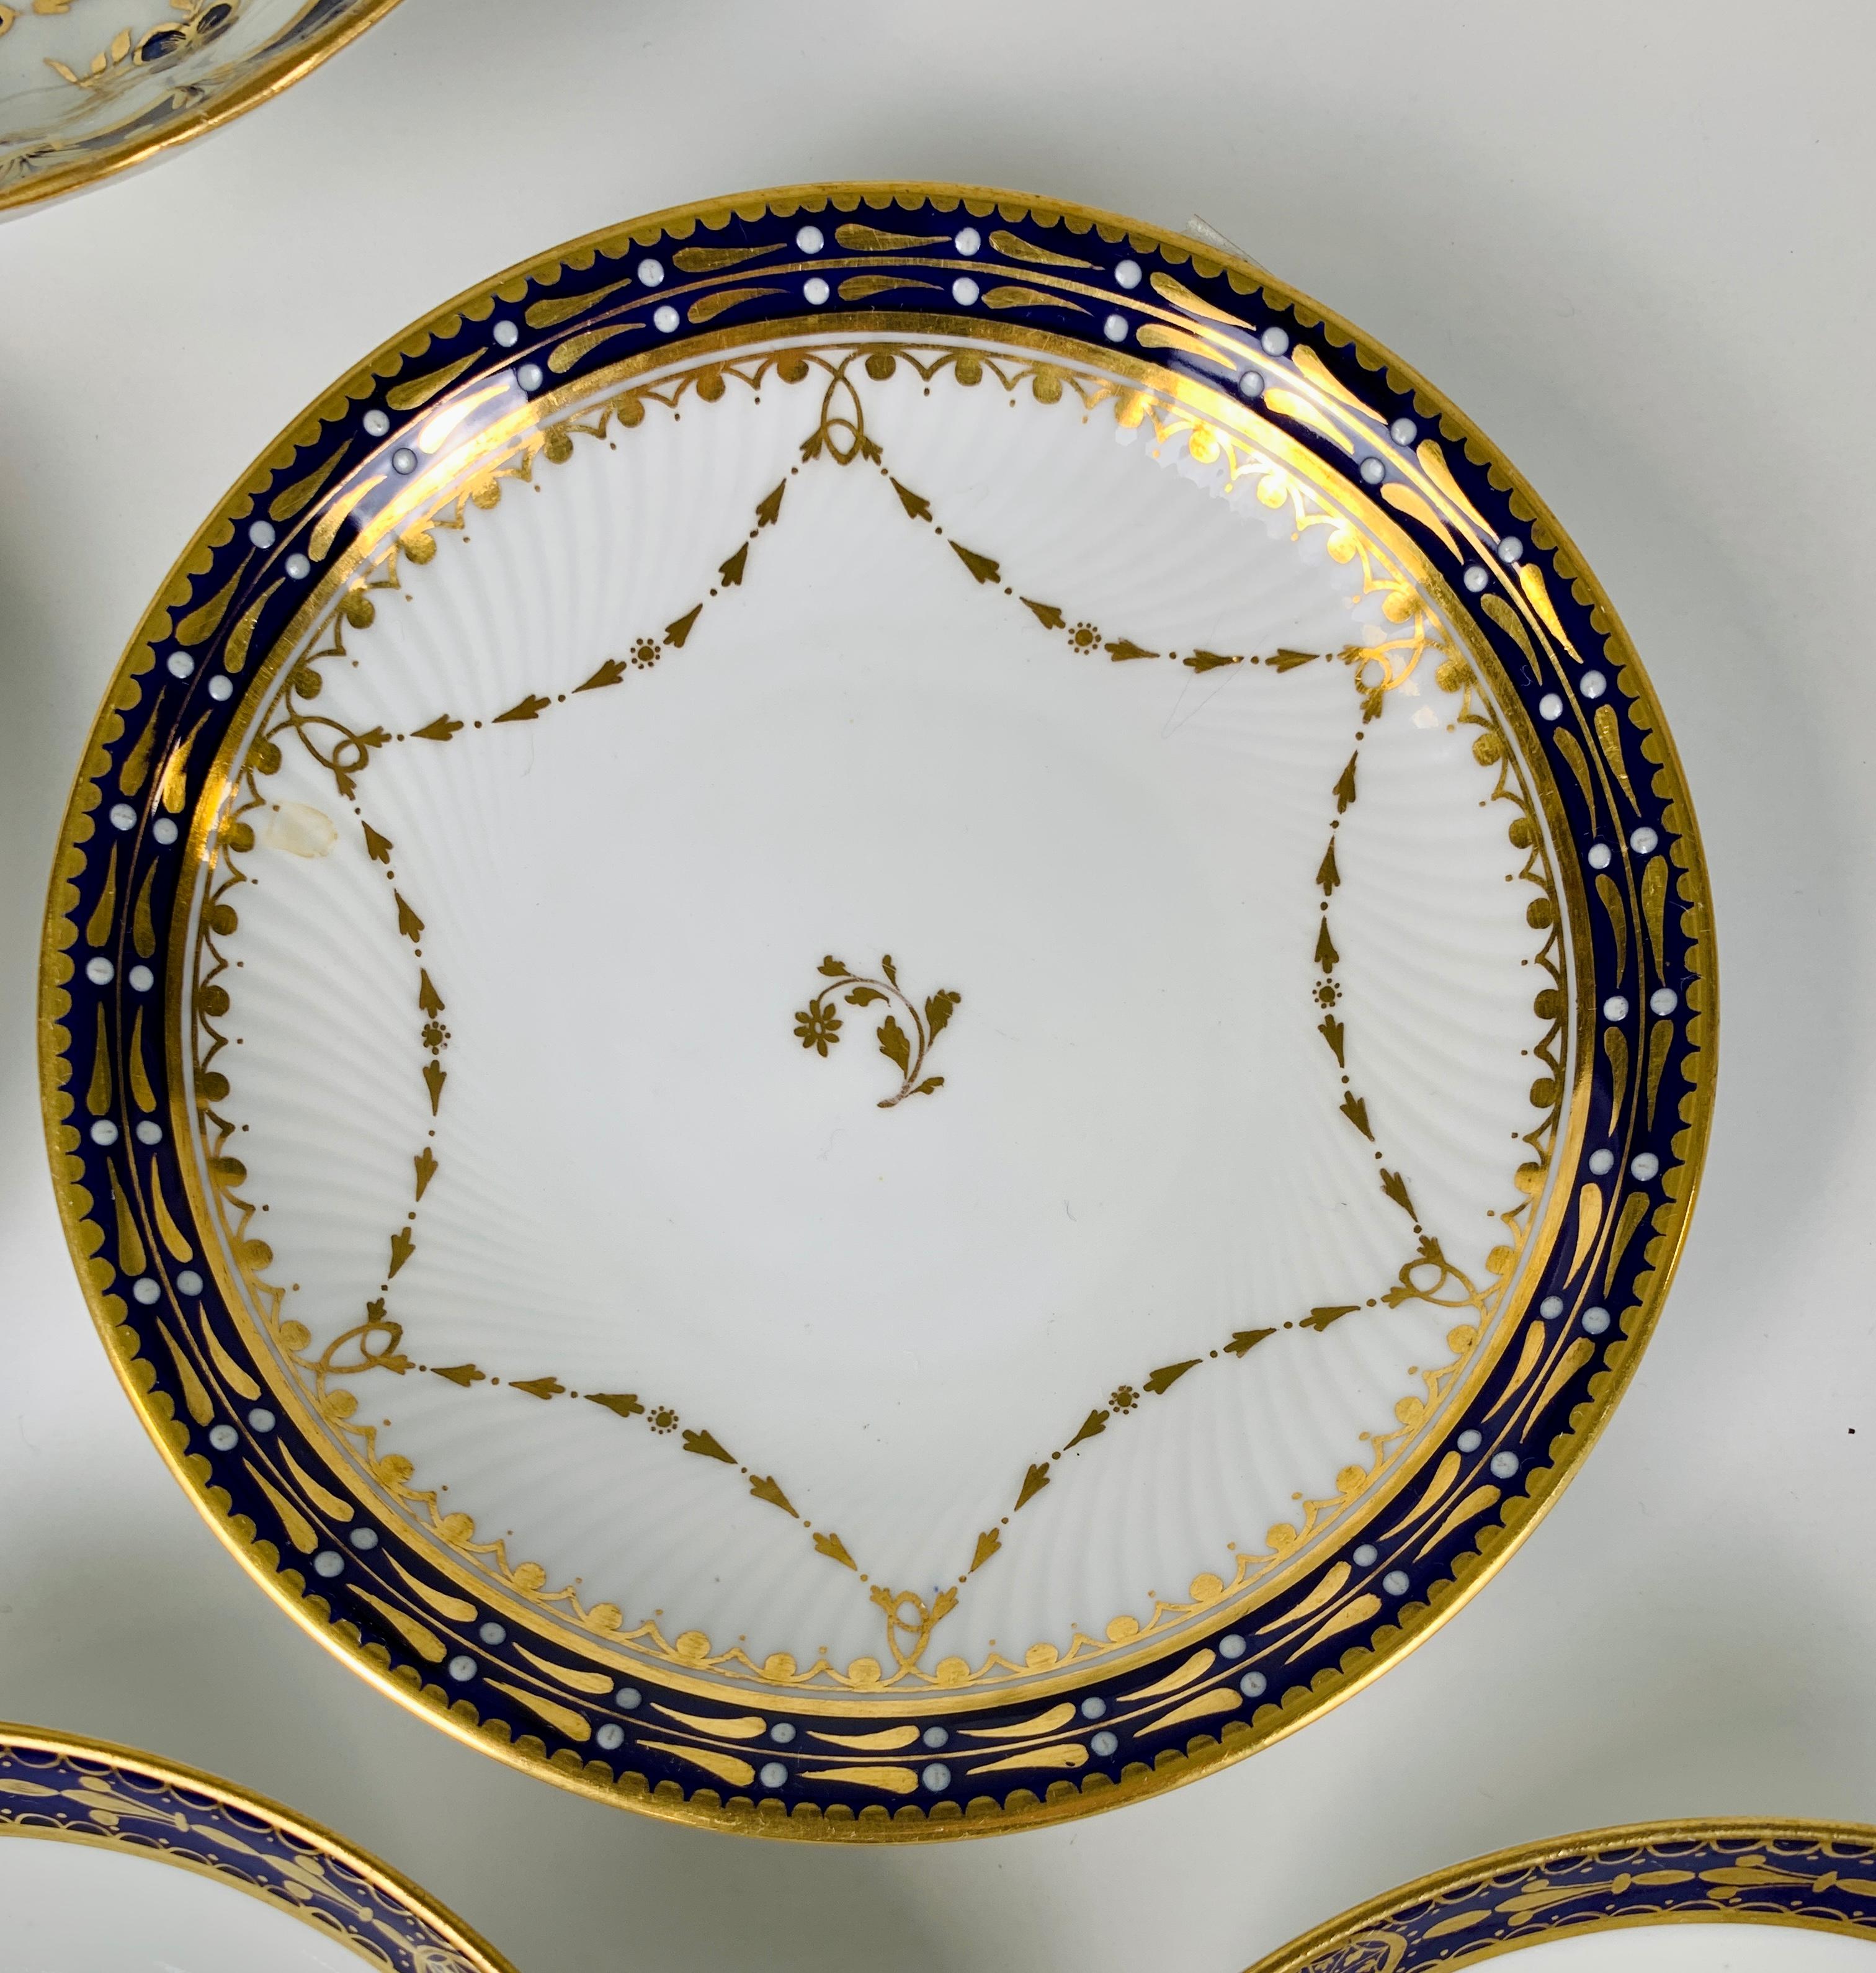 Six anciennes soucoupes en porcelaine avec des bordures bleu cobalt et or ont été fabriquées en Angleterre à la fin du 19e siècle. La décoration dorée est simple et raffinée dans le style Regency.
Dimensions : 5.25